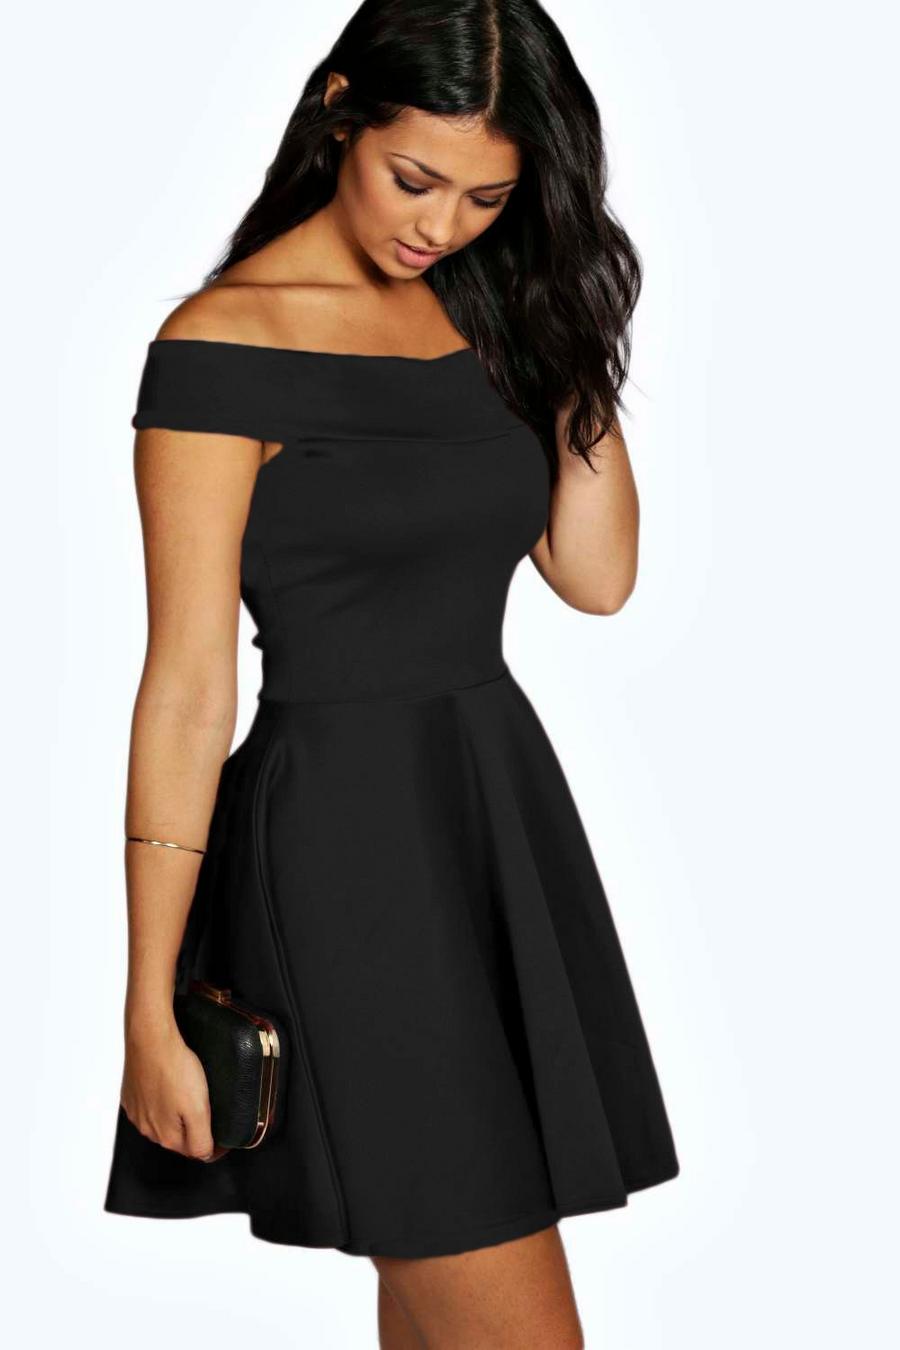 Black שמלת סקייטר עם כתפיים חשופות